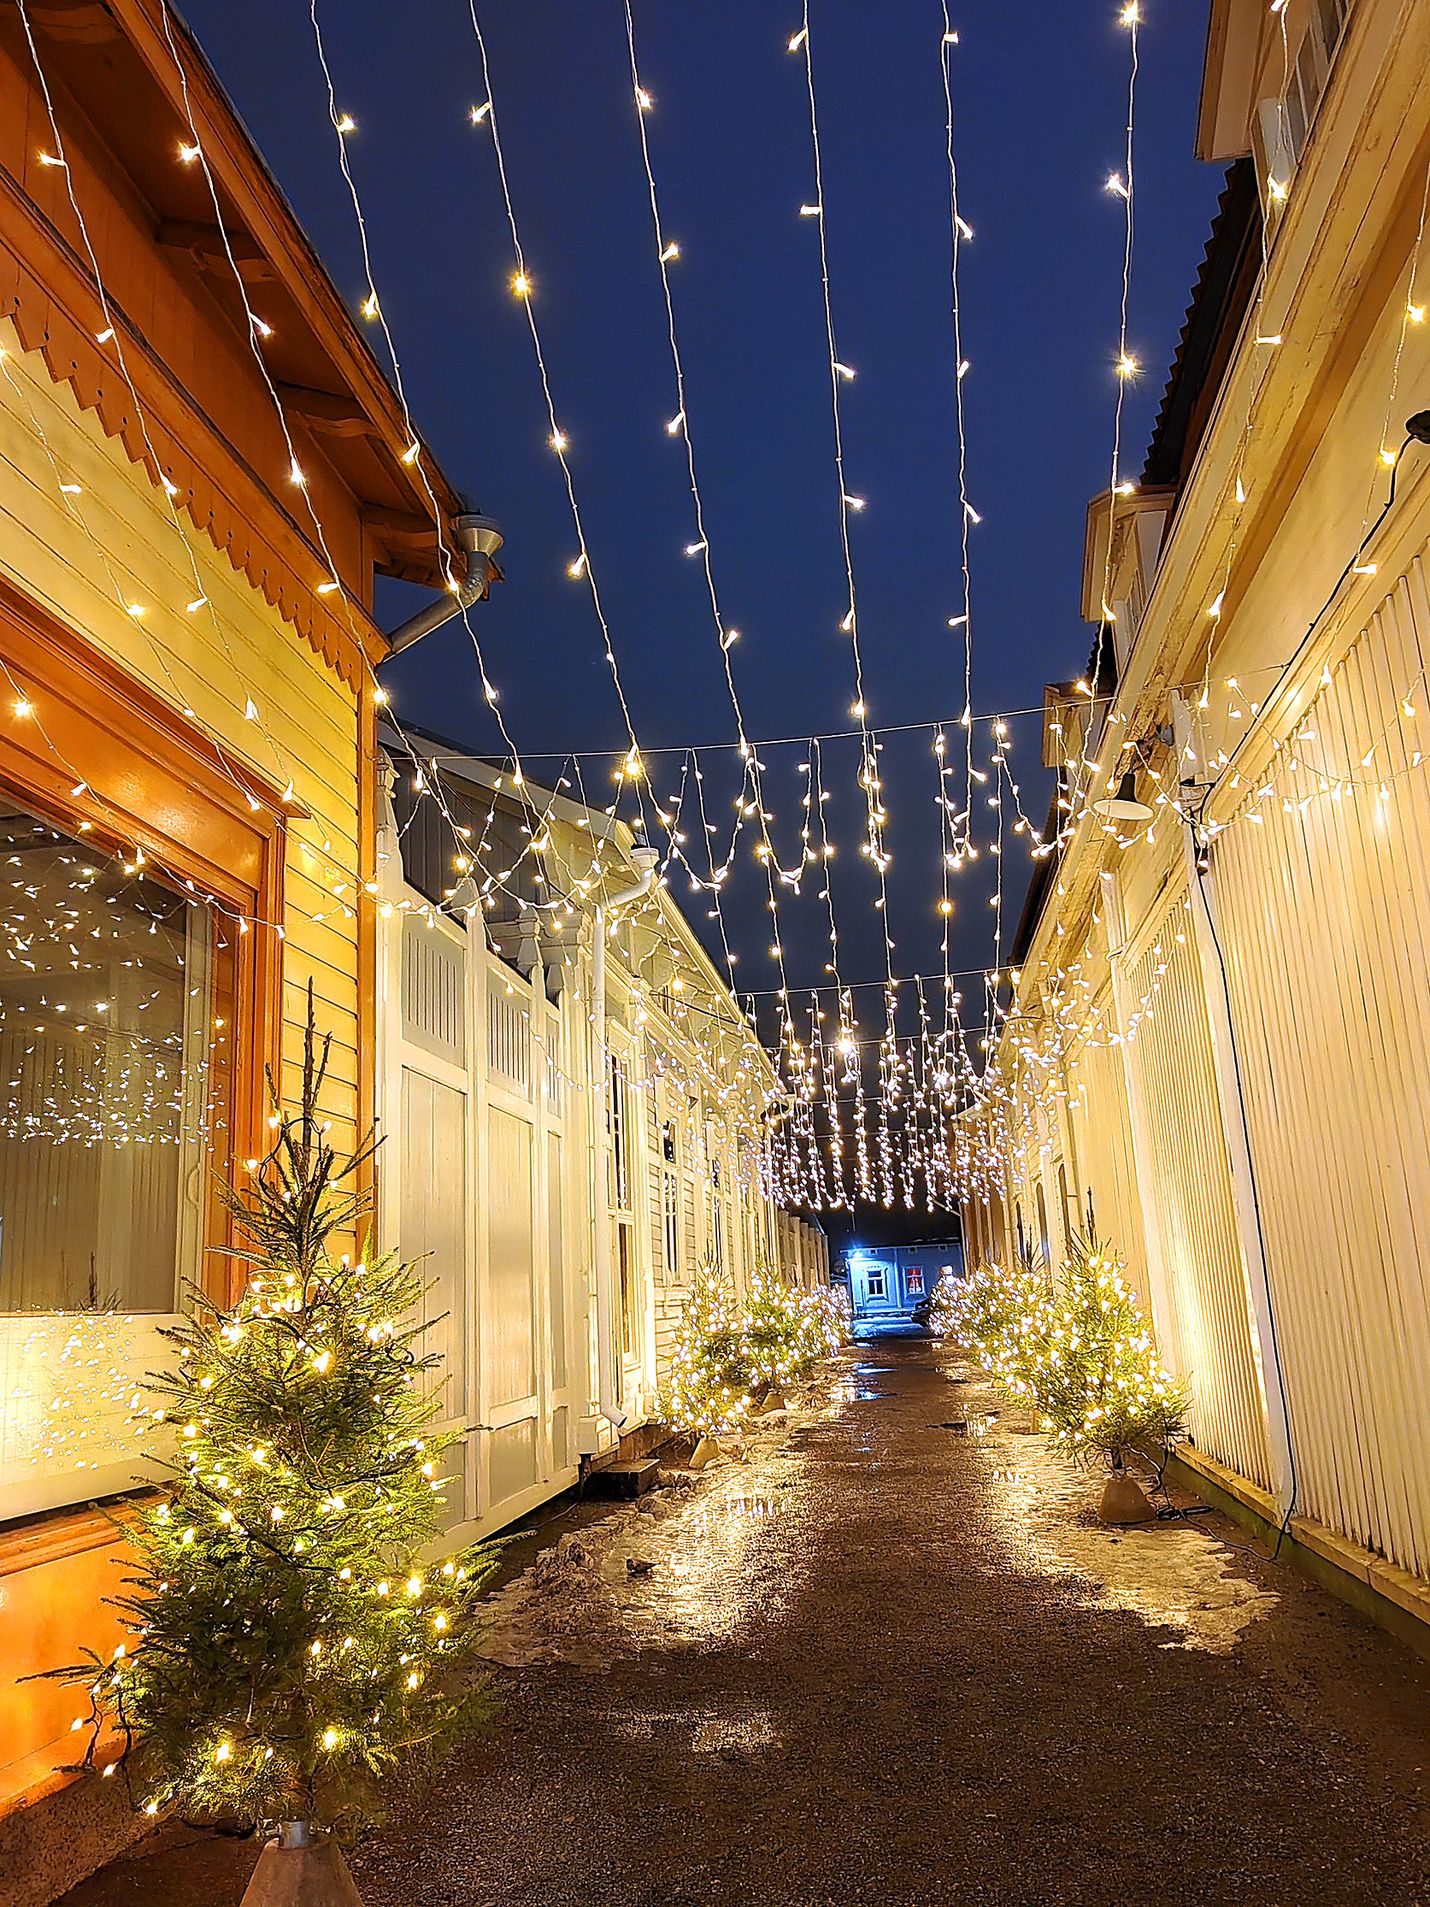 Vähäraastuvankadun valo- ja kuusikuja Vanhassa Raumassa tuli tallennetuksi monen kävijän some-tilille joulunaikaan.